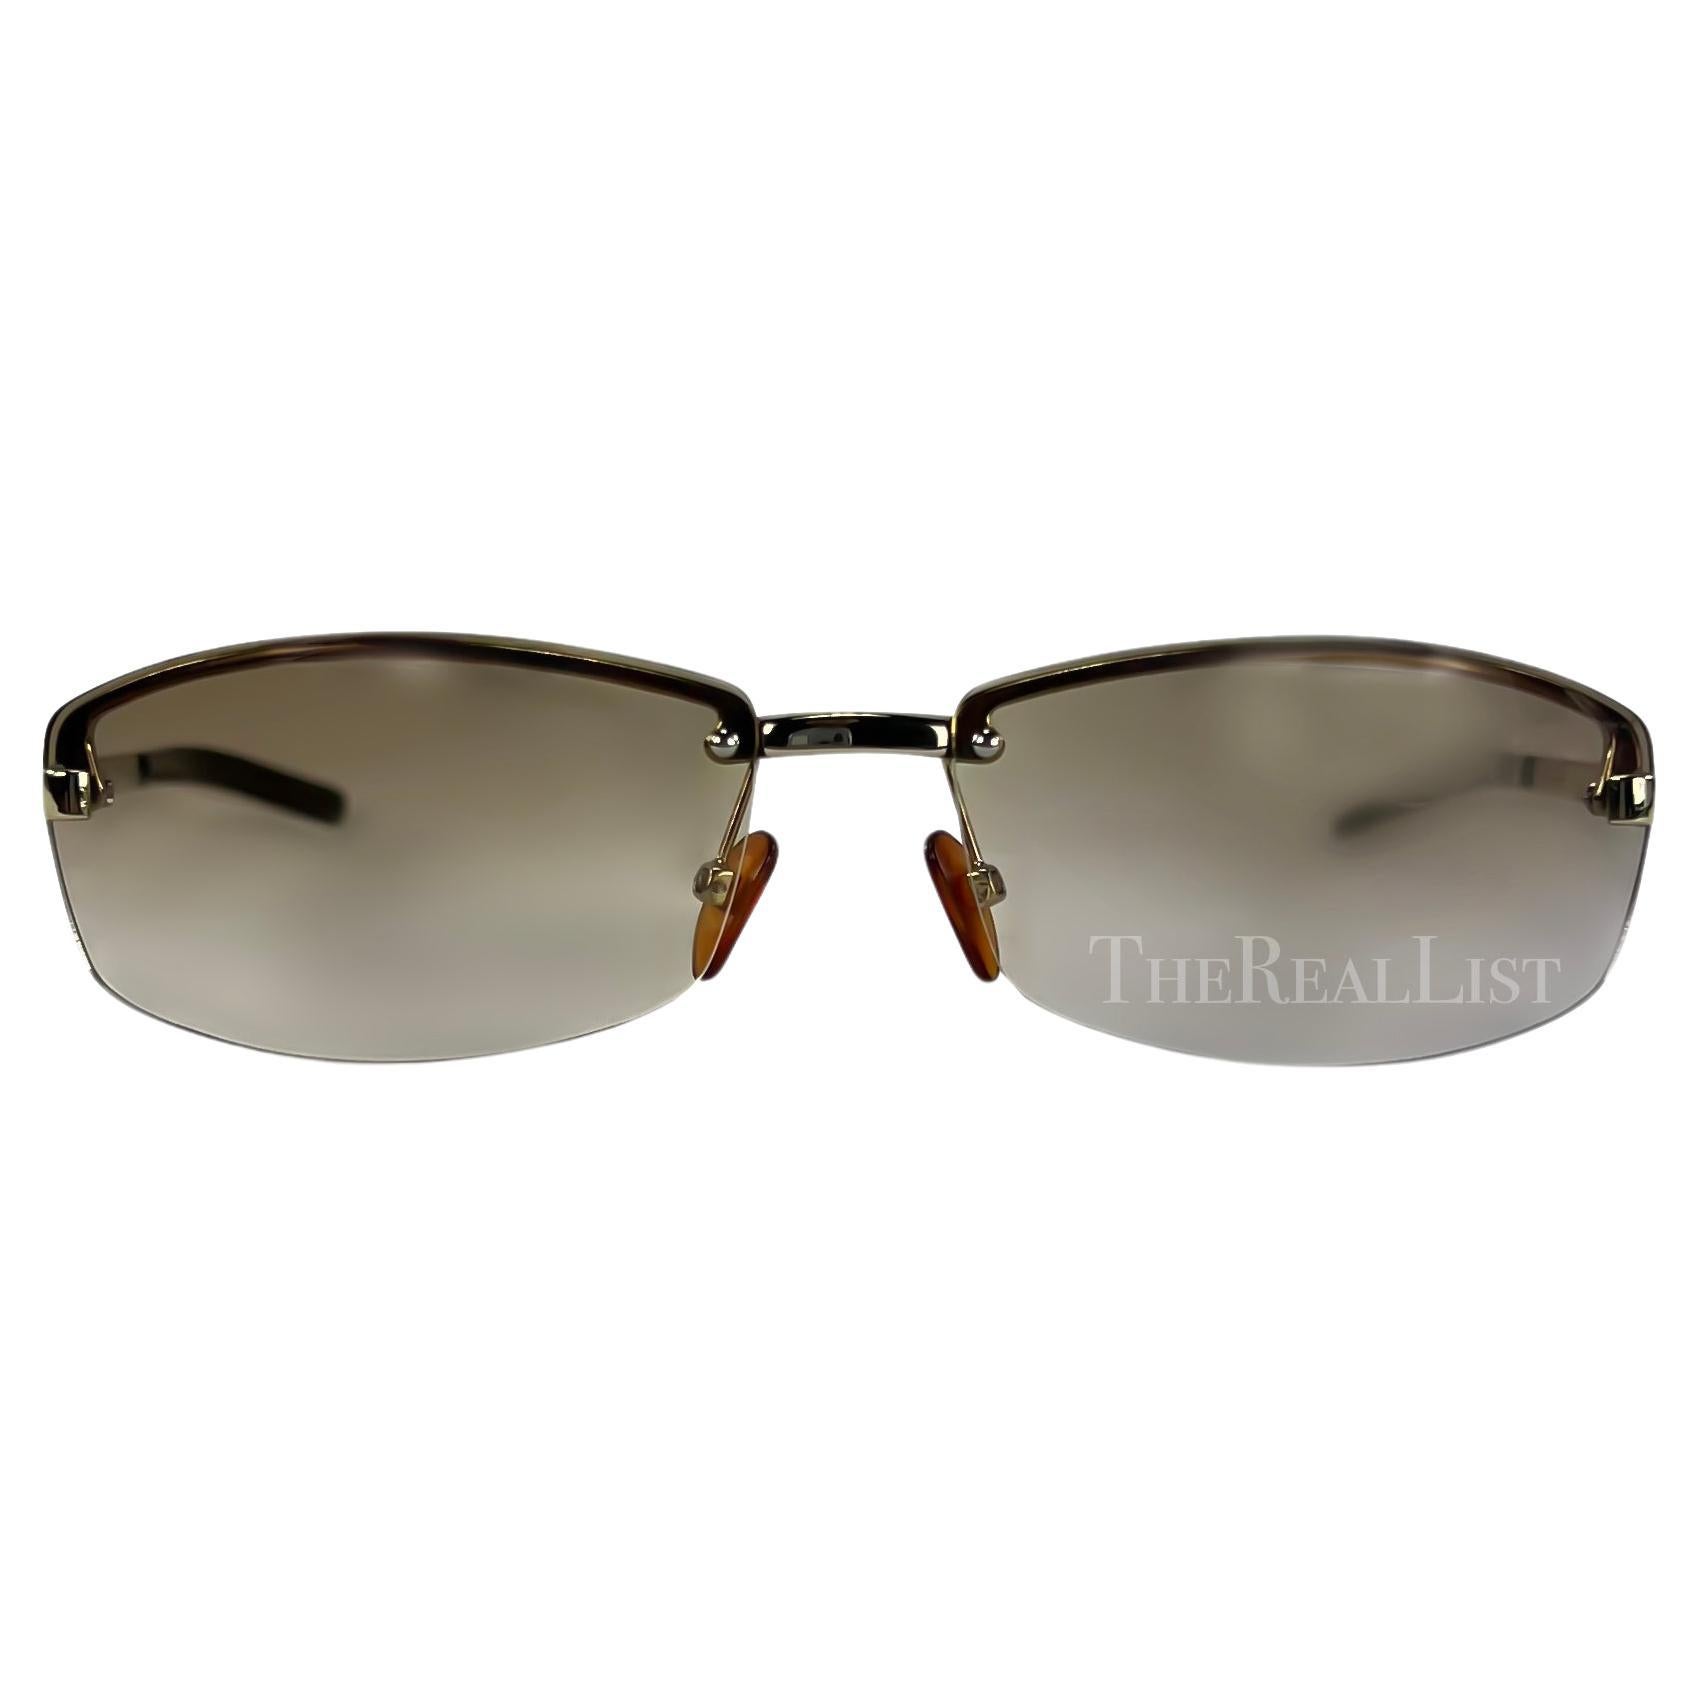 Présentation d'une paire de lunettes de soleil Gucci sans monture, de couleur marron, conçues par Tom Ford. Datant du début des années 2000, ces lunettes de soleil sont dotées d'un verre légèrement teinté et de fines branches argentées, rehaussées